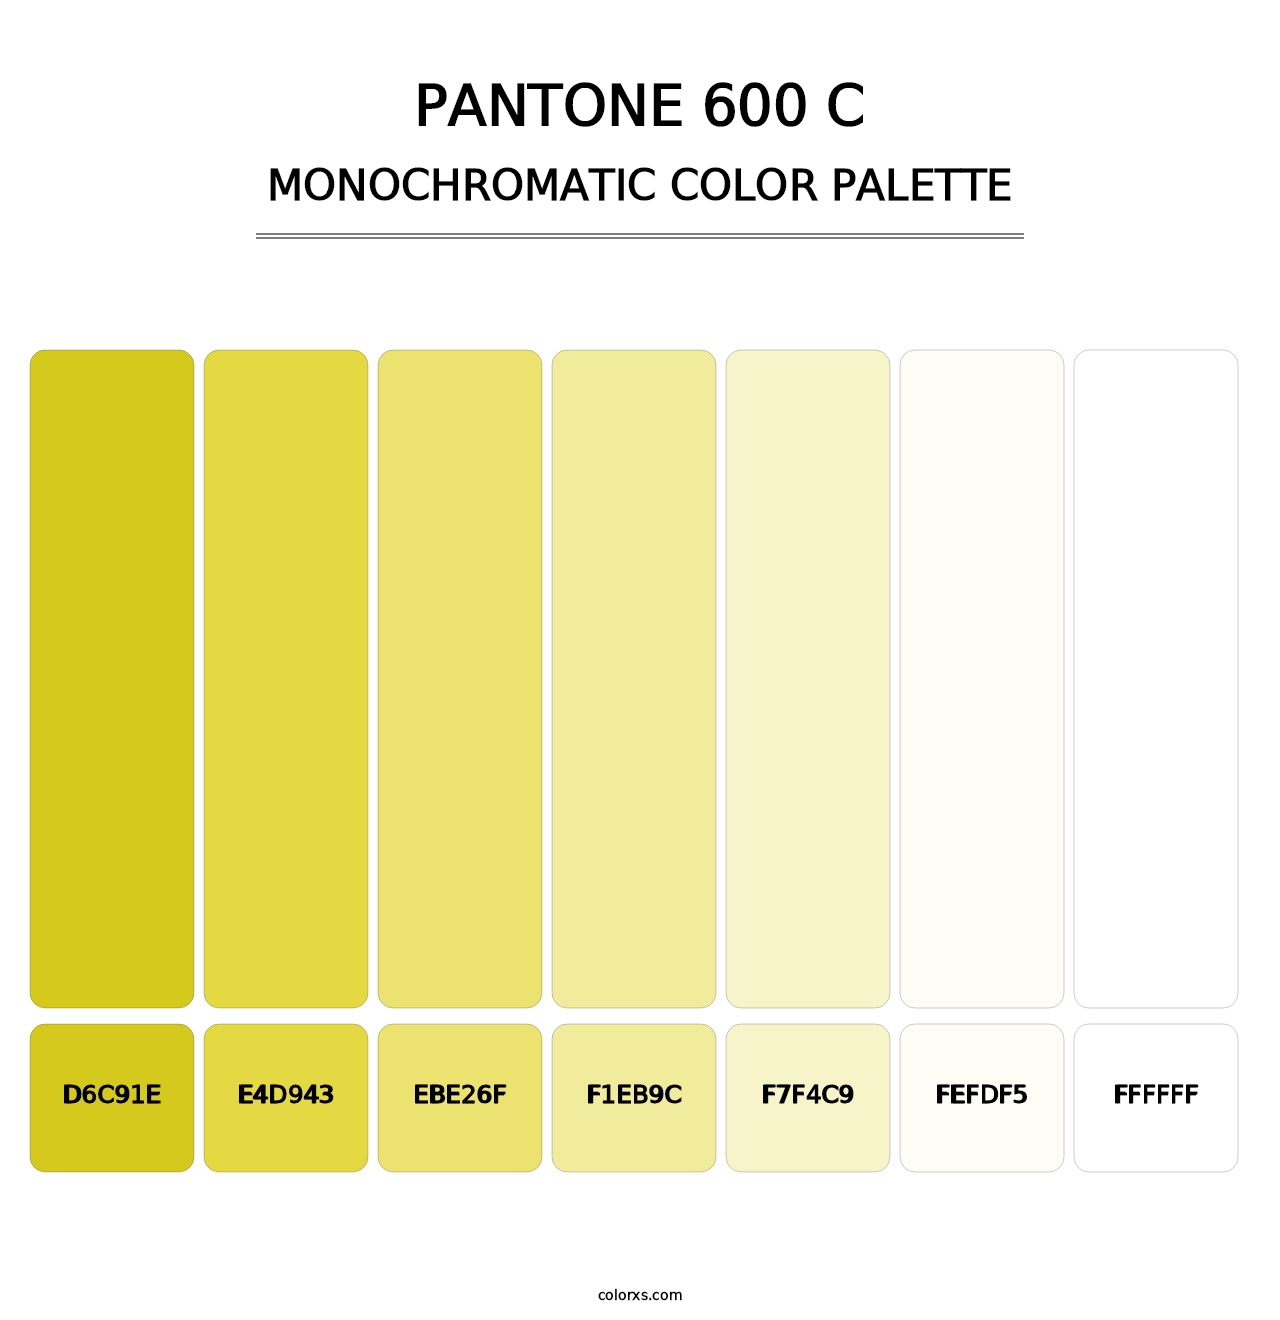 PANTONE 600 C - Monochromatic Color Palette